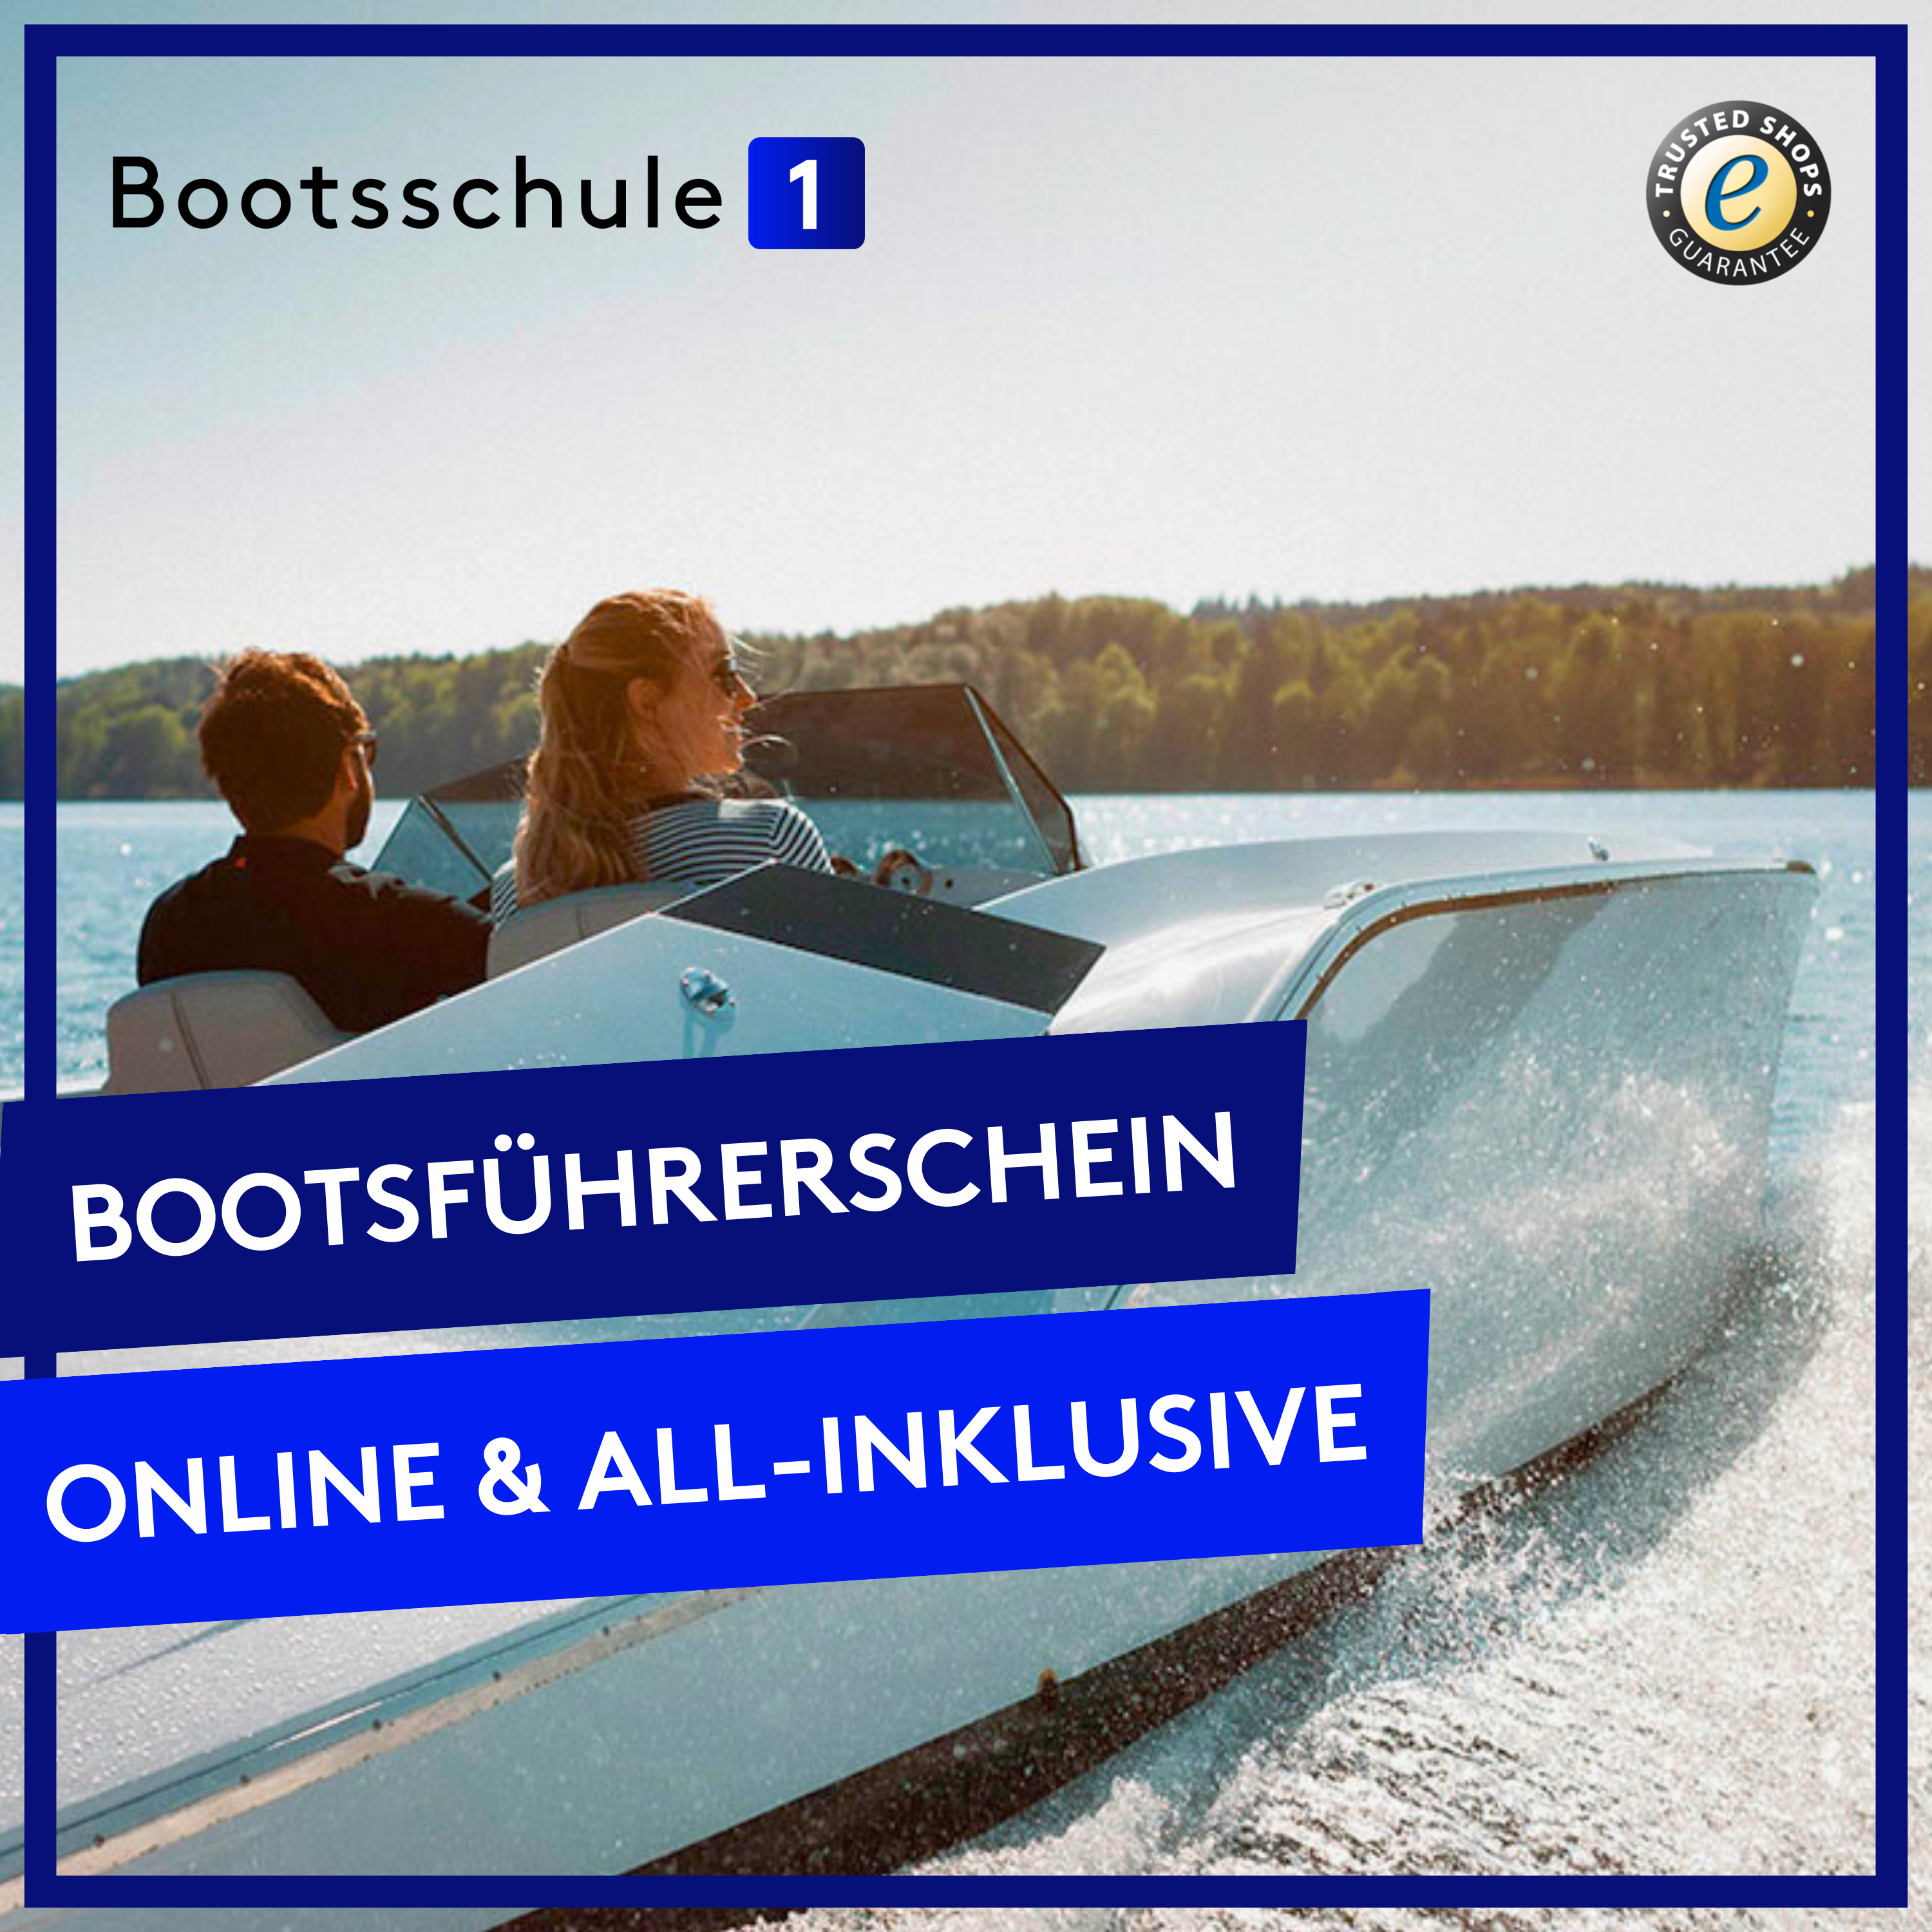 Sportbootführerschein See & Binnen inkl. Praxisausbildung und Kursmaterial in Düsseldorf + andere Orte bei Bootsschule1